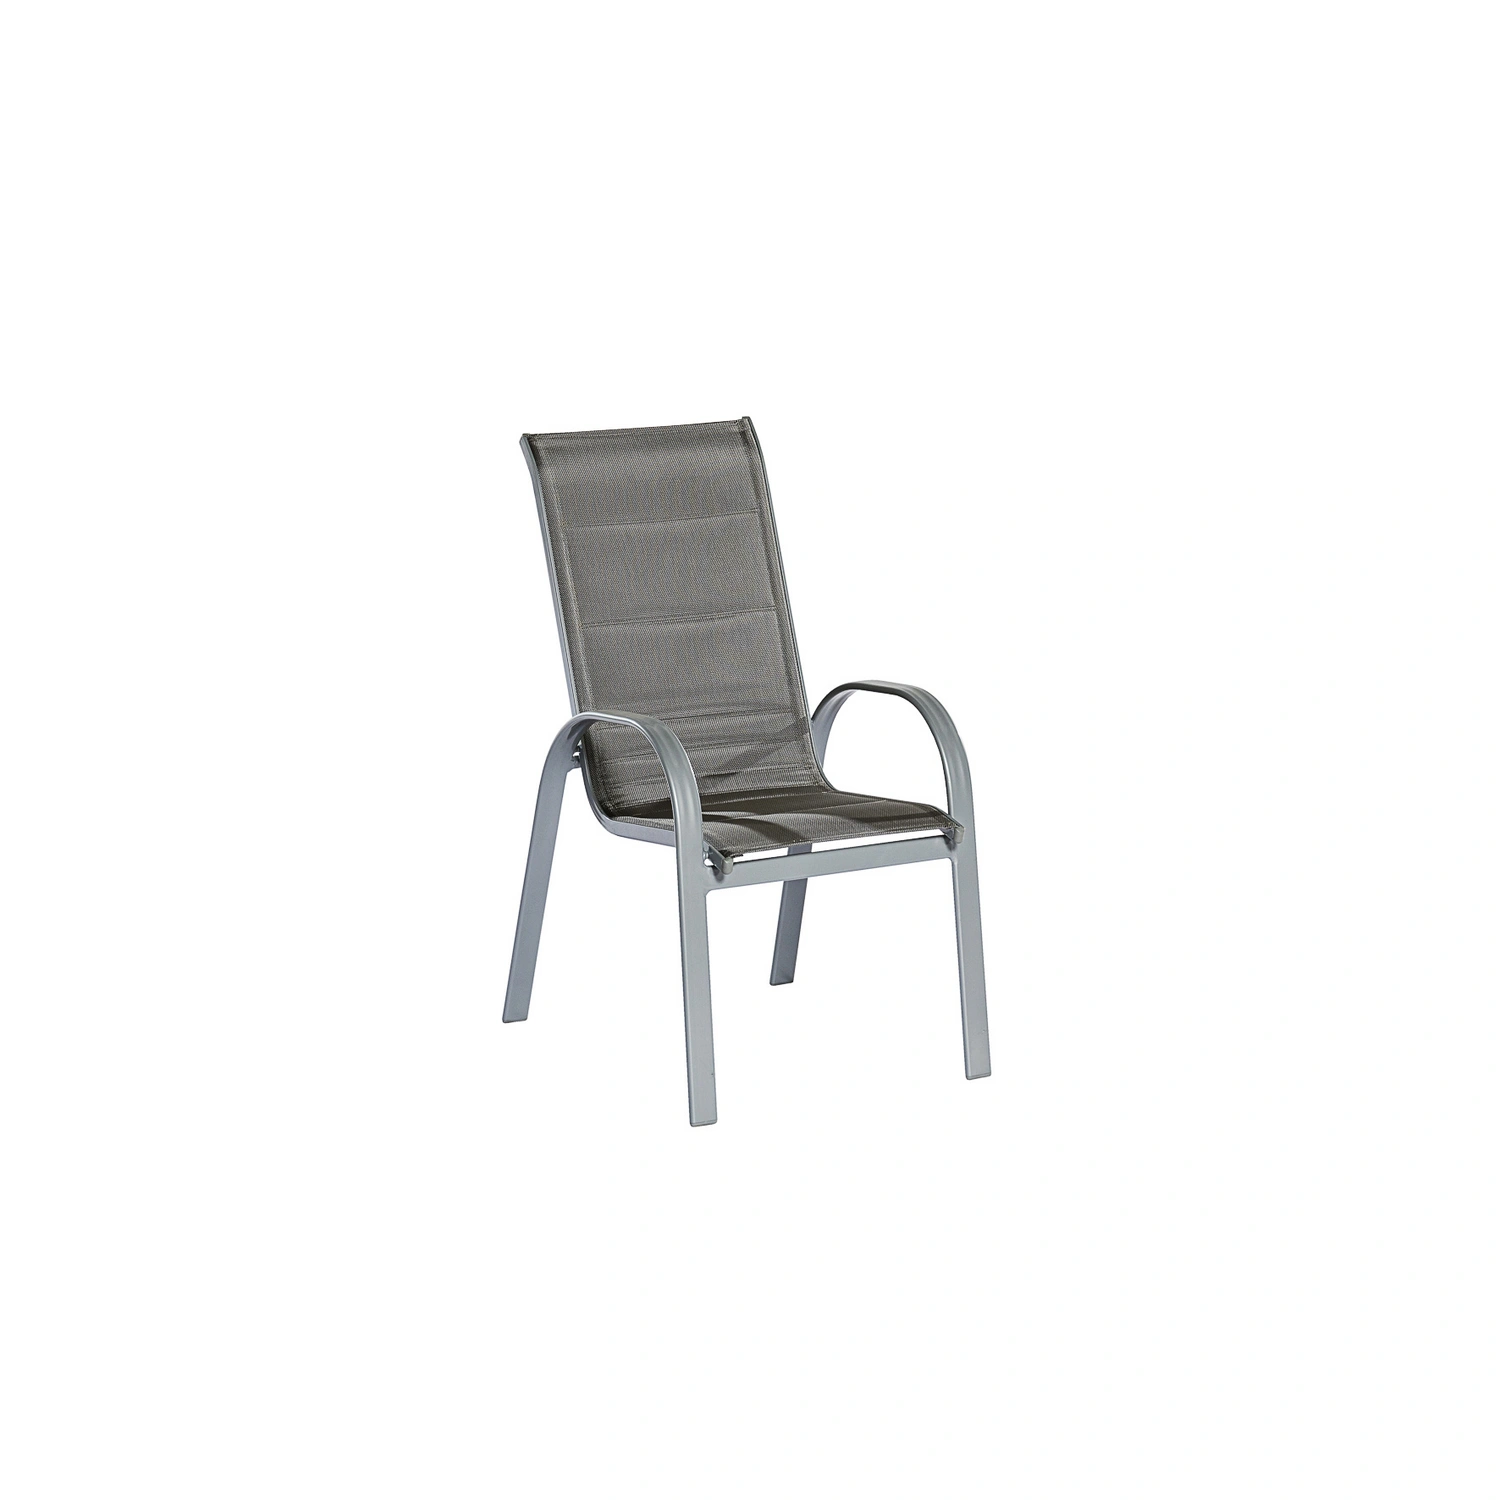 Gartenmöbelset »Amalfi«, MERXX 2 Aluminium/Textil Sitzplätze,